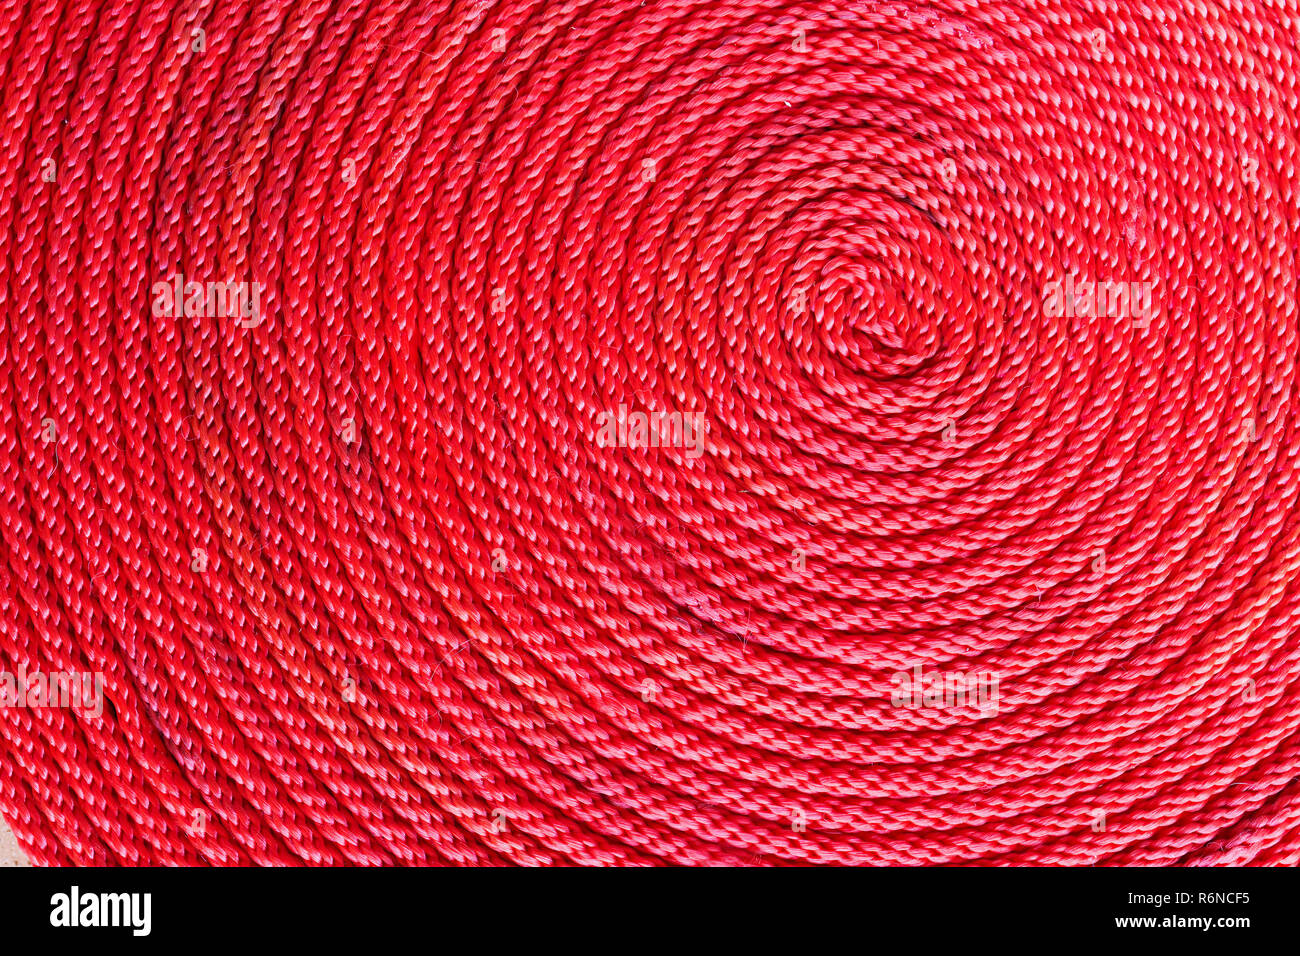 Bobina de cuerda roja Foto de stock